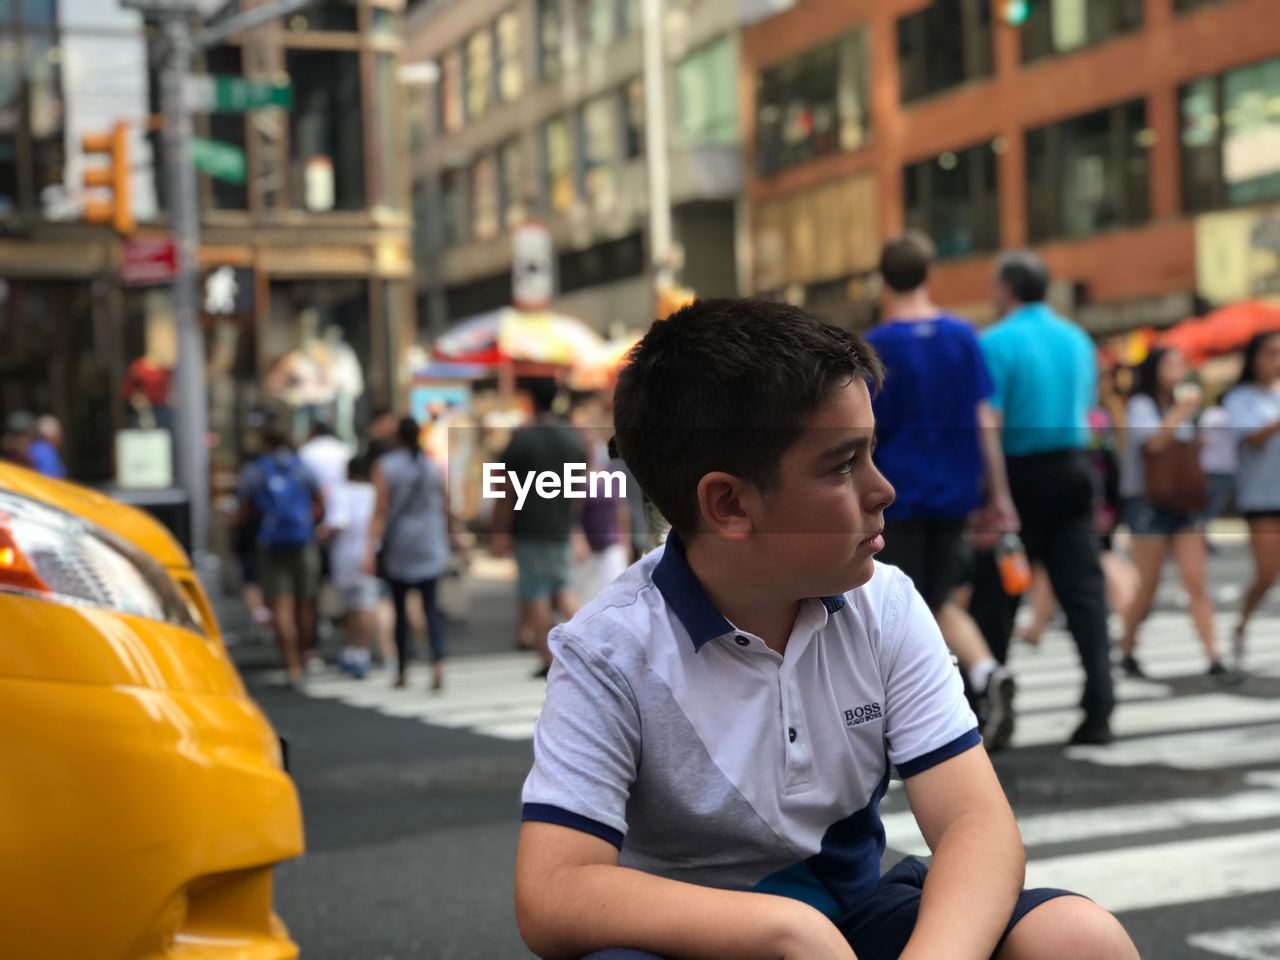 BOY IN STREET